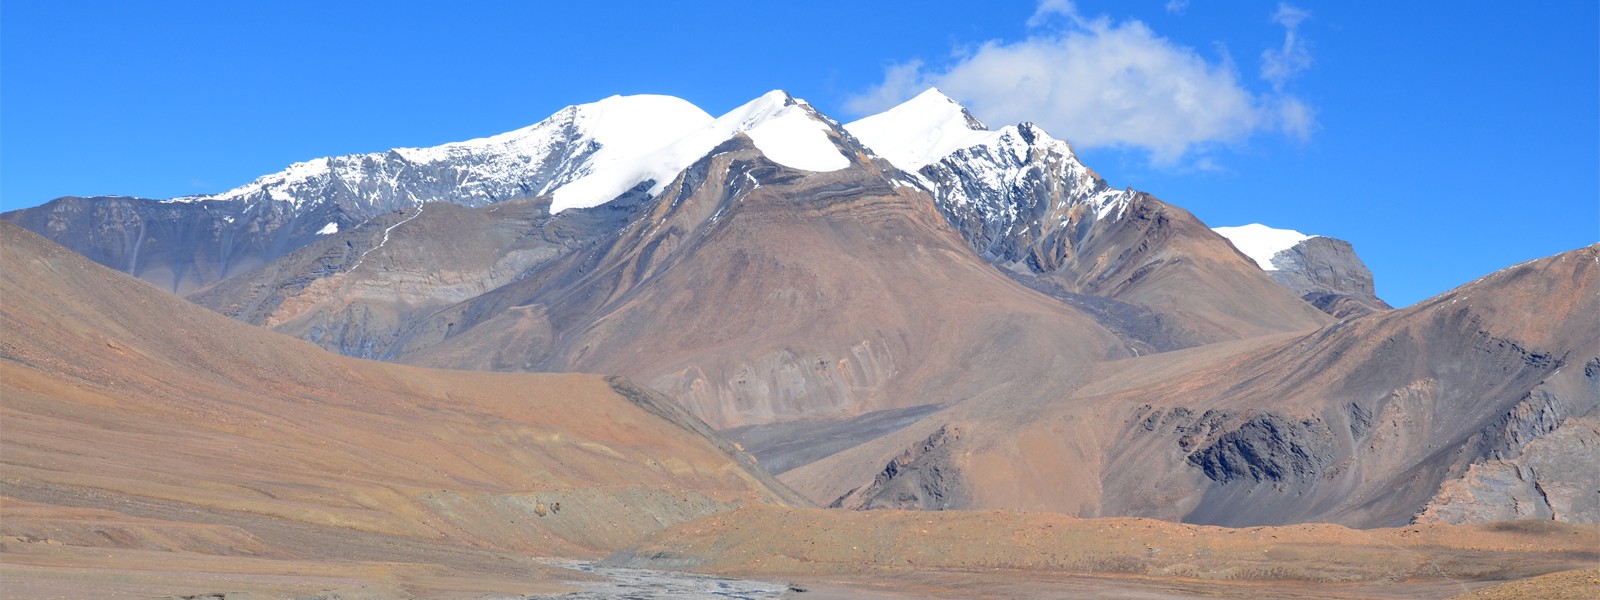 Mt. Sita Chuchura Climbing